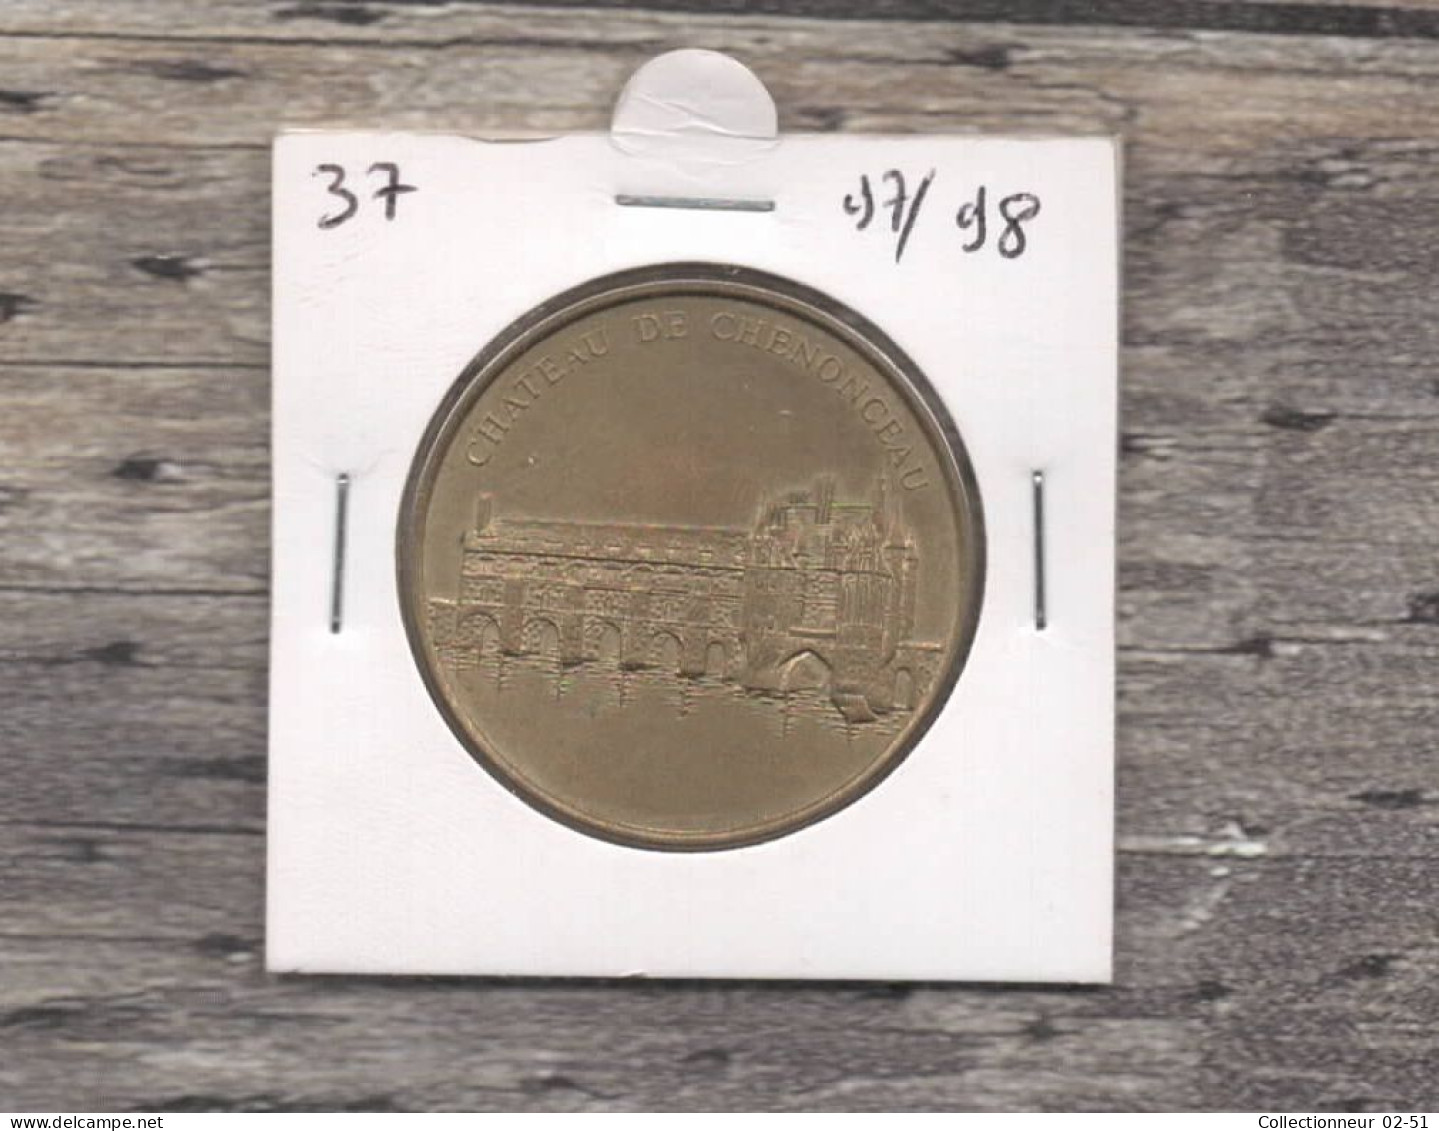 Monnaie De Paris : Château De Chenonceau - 1998 - Ohne Datum